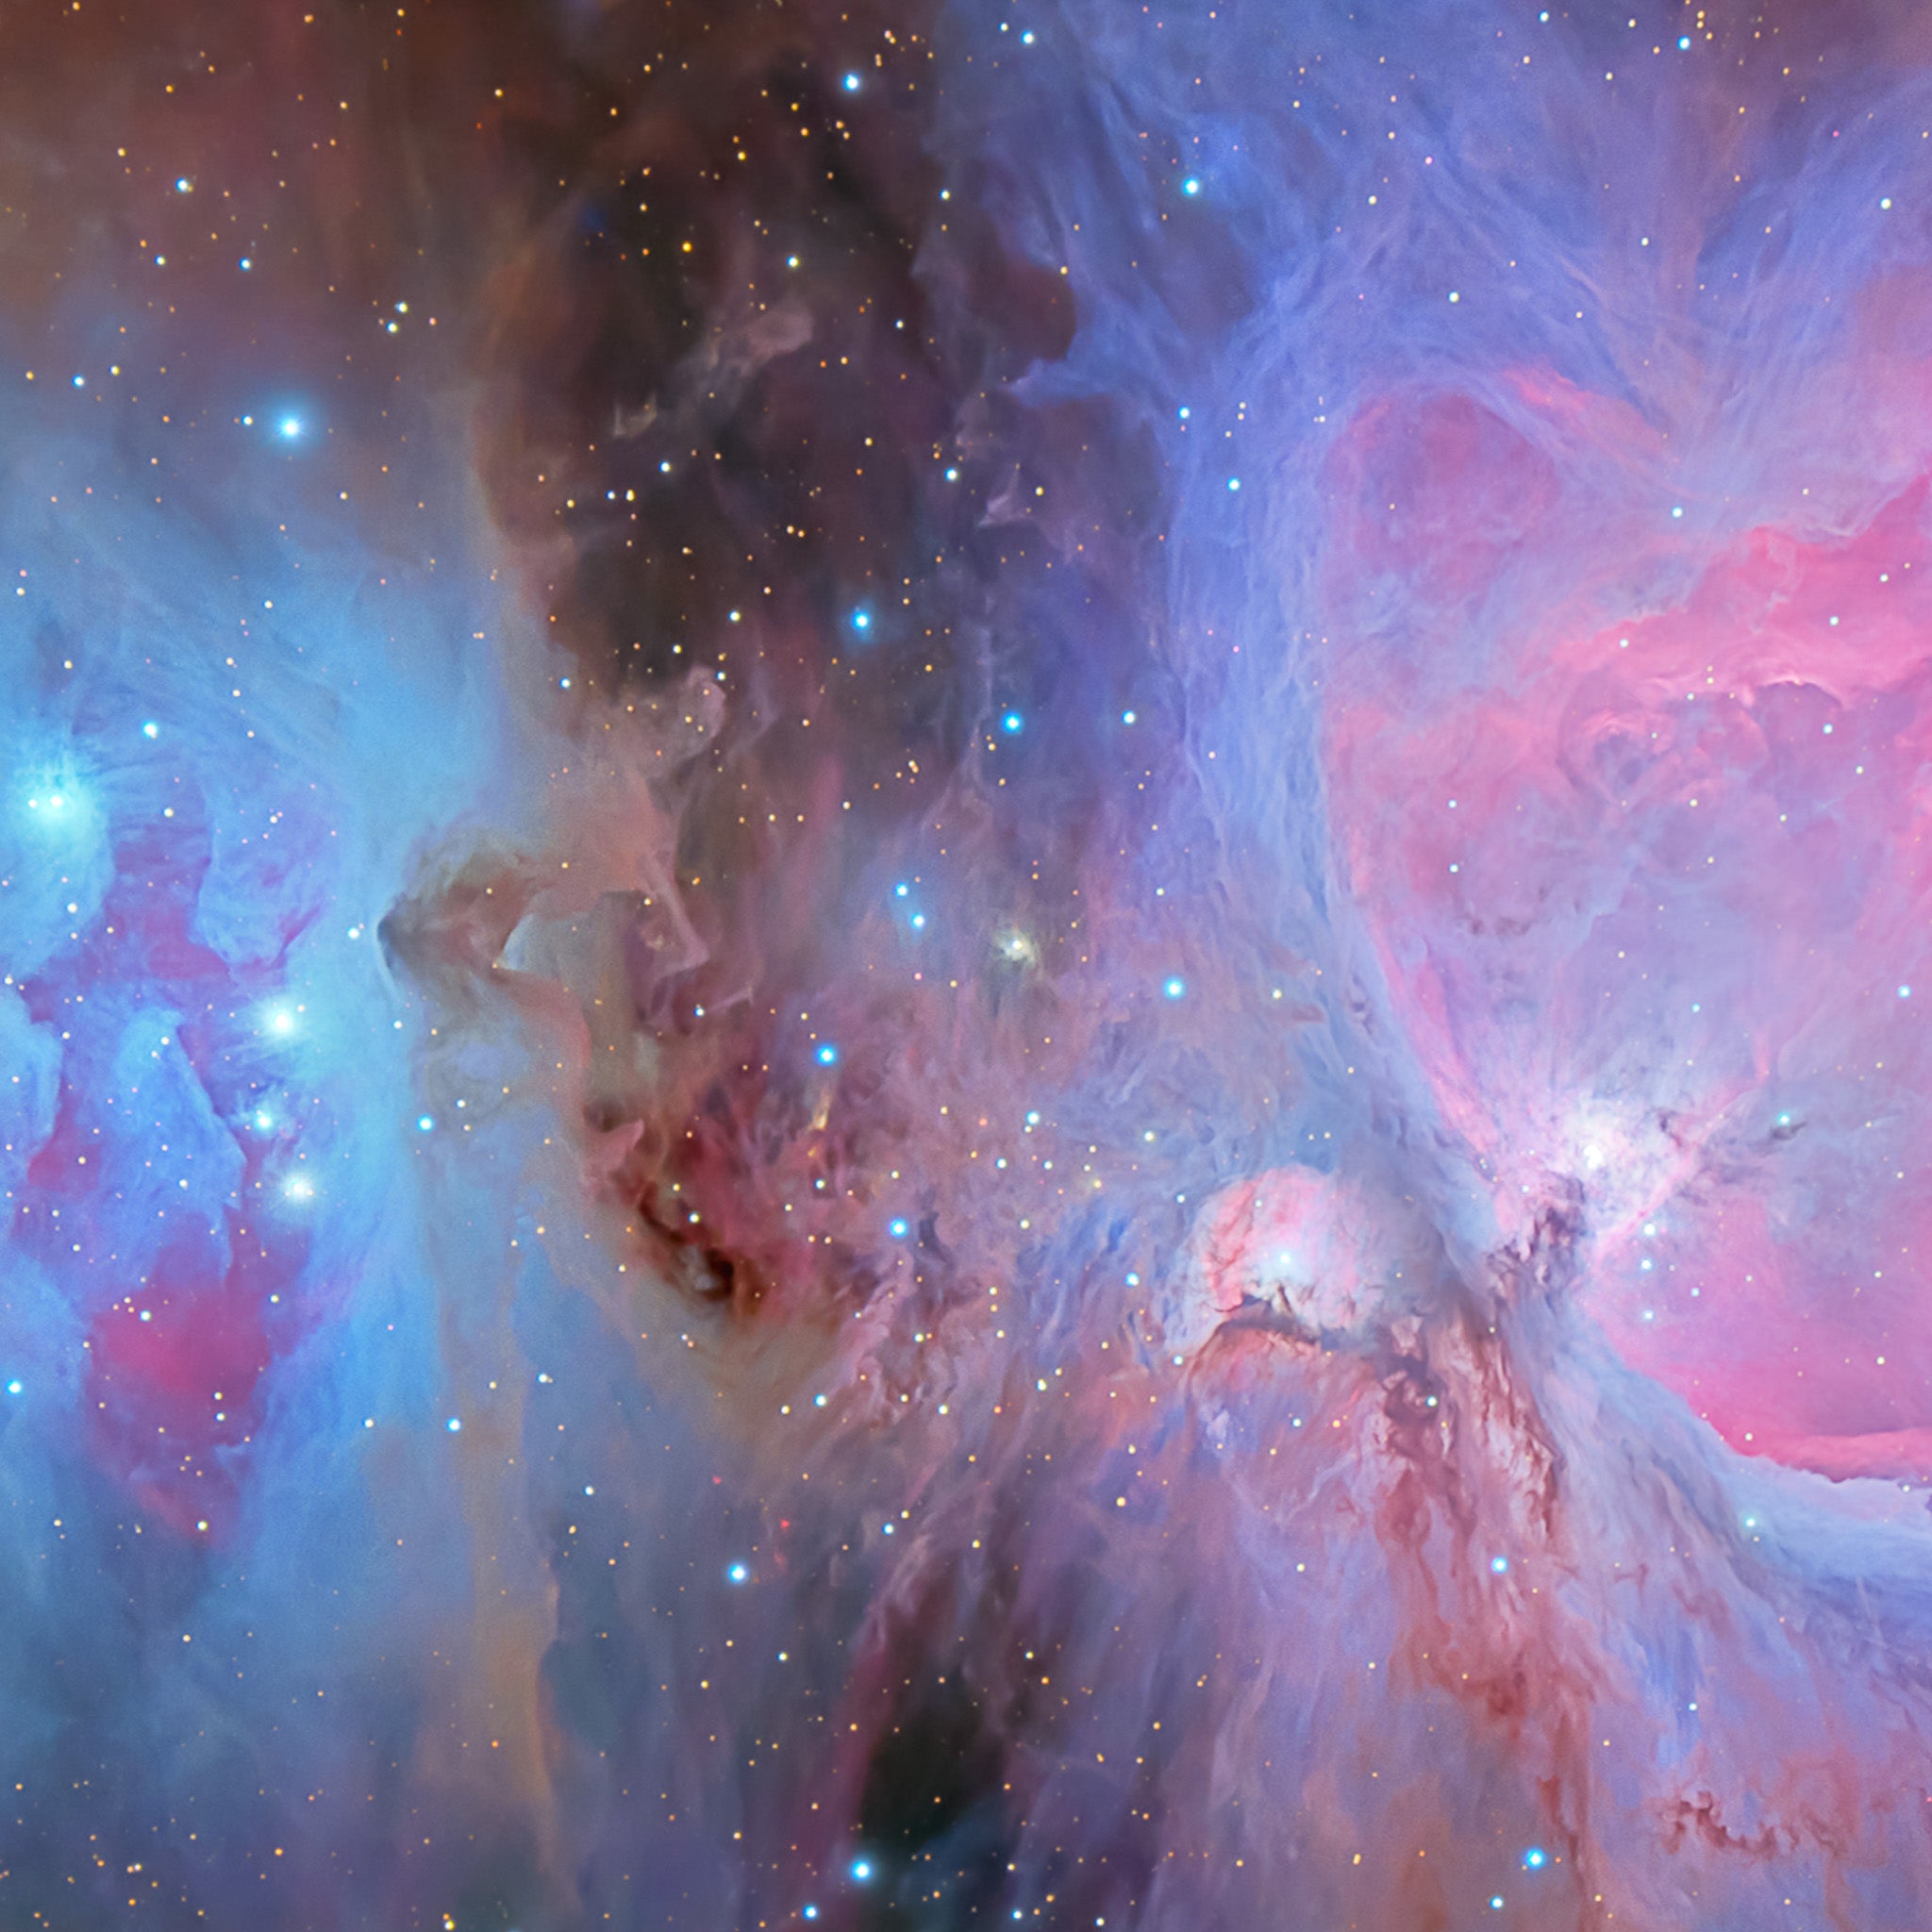 M42 the Orion Nebula